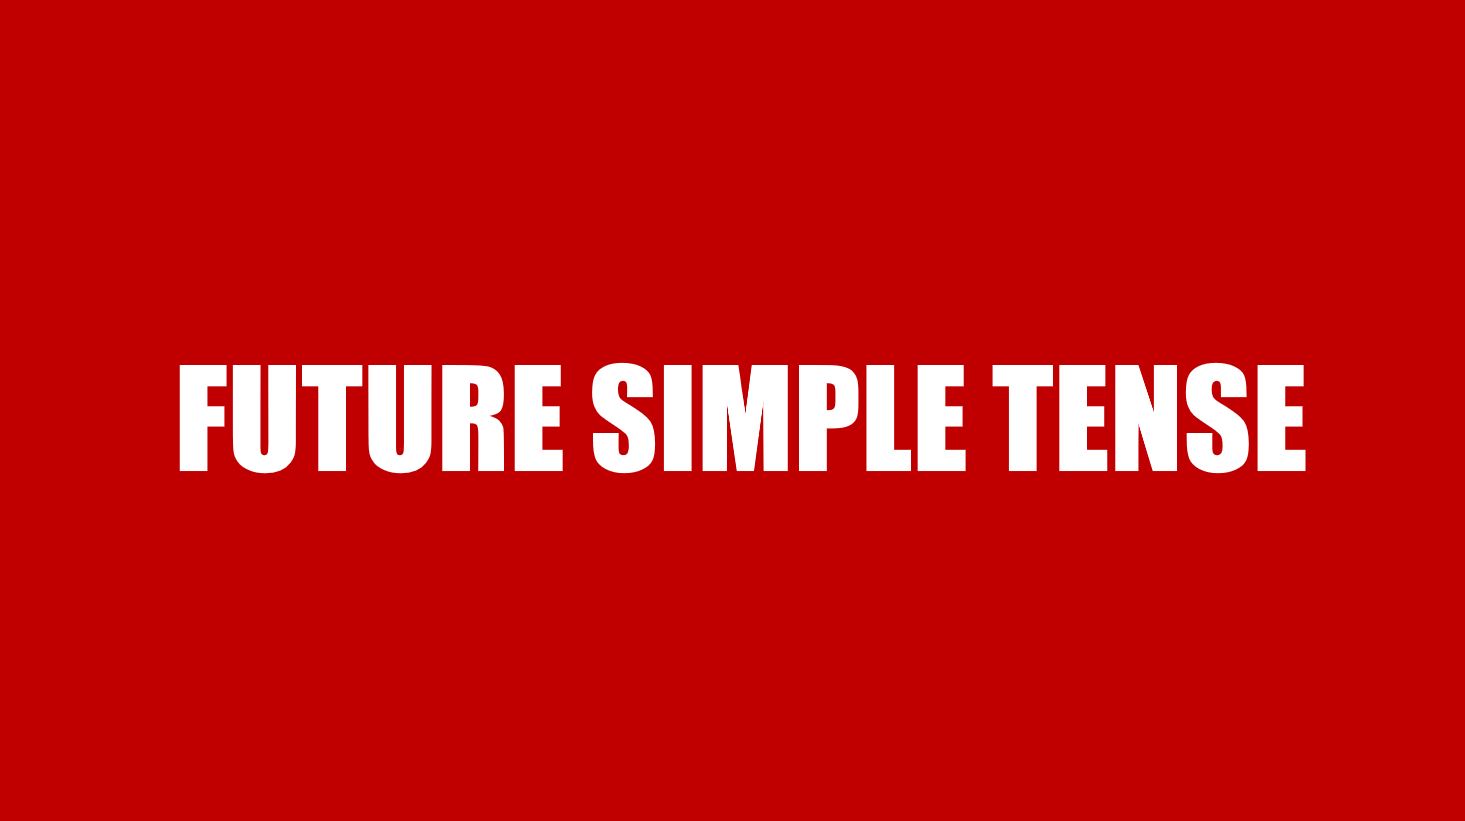 LangGo - Future Simple Tense - Thì tương lai đơn: Cấu trúc, cách dùng và bài tập